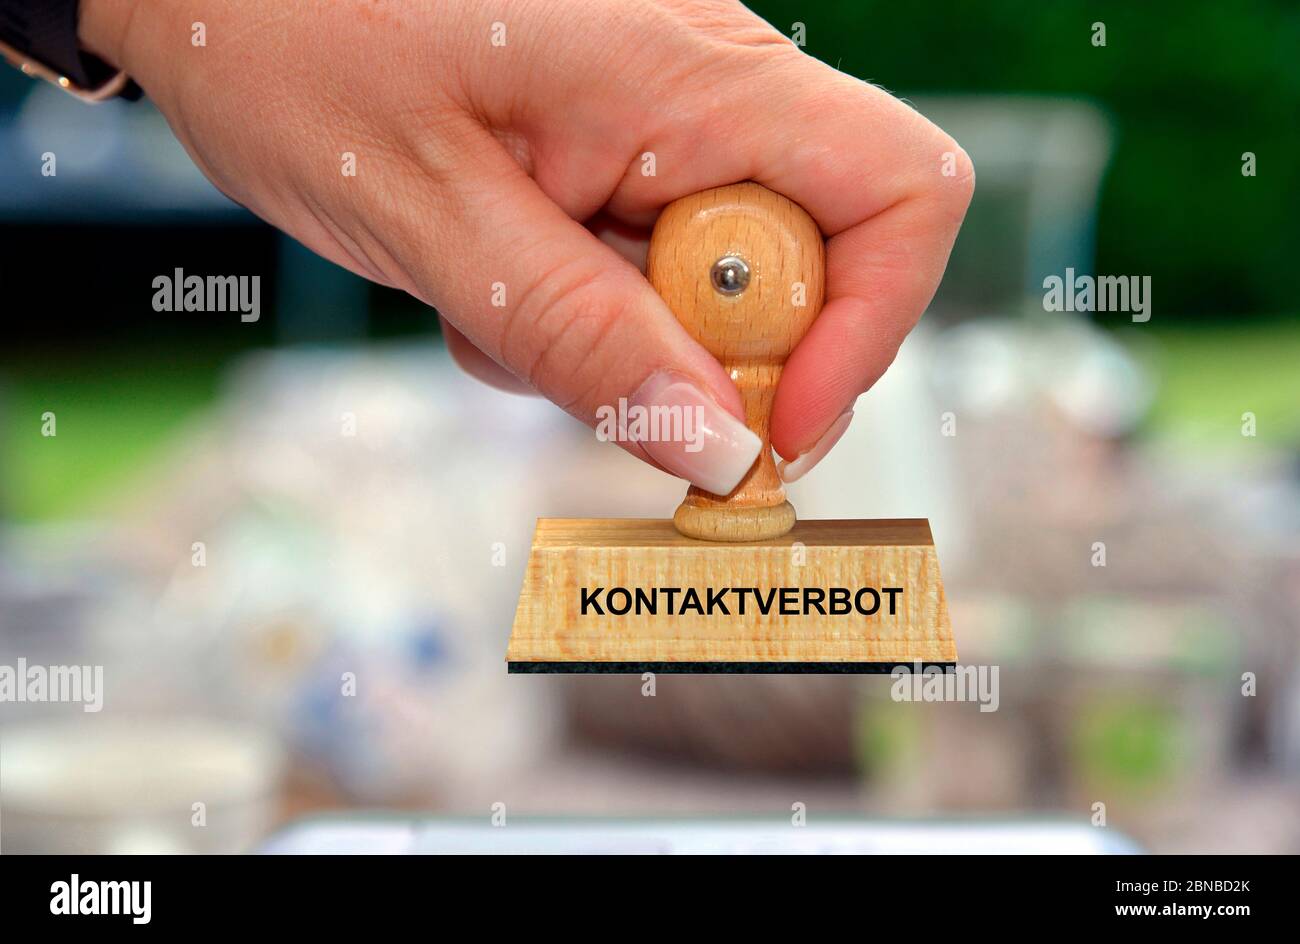 Sello en la mano de una mujer que le ha dicho Kontaktverbot, prohibición de contacto, Alemania Foto de stock